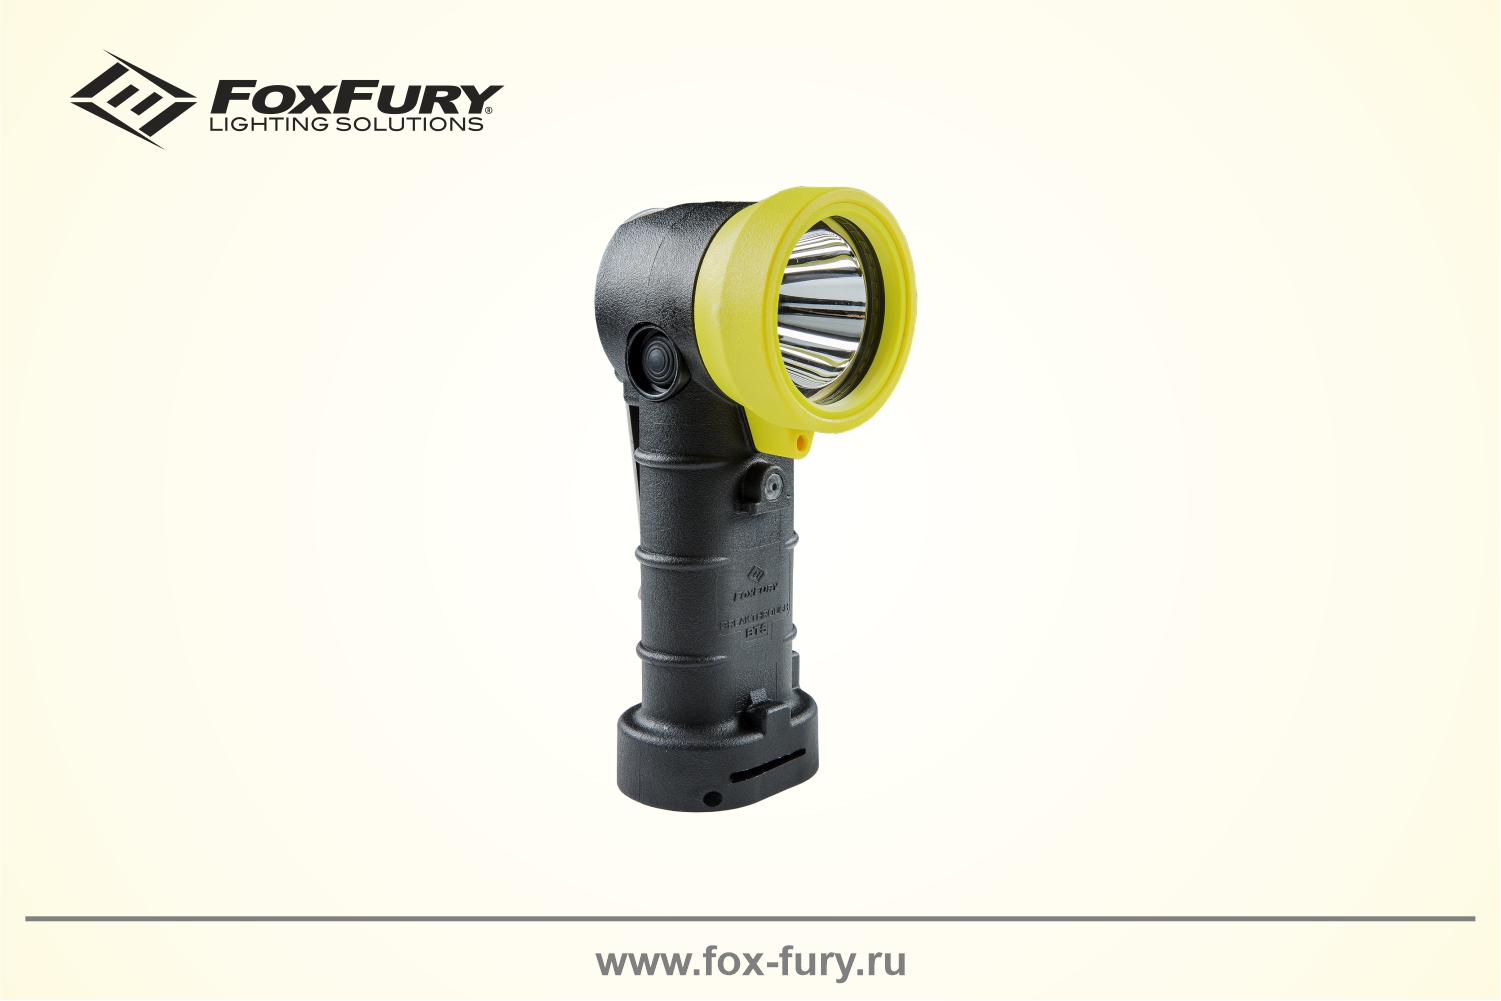 Универсальный светодиодный Г-образный фонарь 500 люмен FoxFury Breakthrough BTS 380-BTS-BY